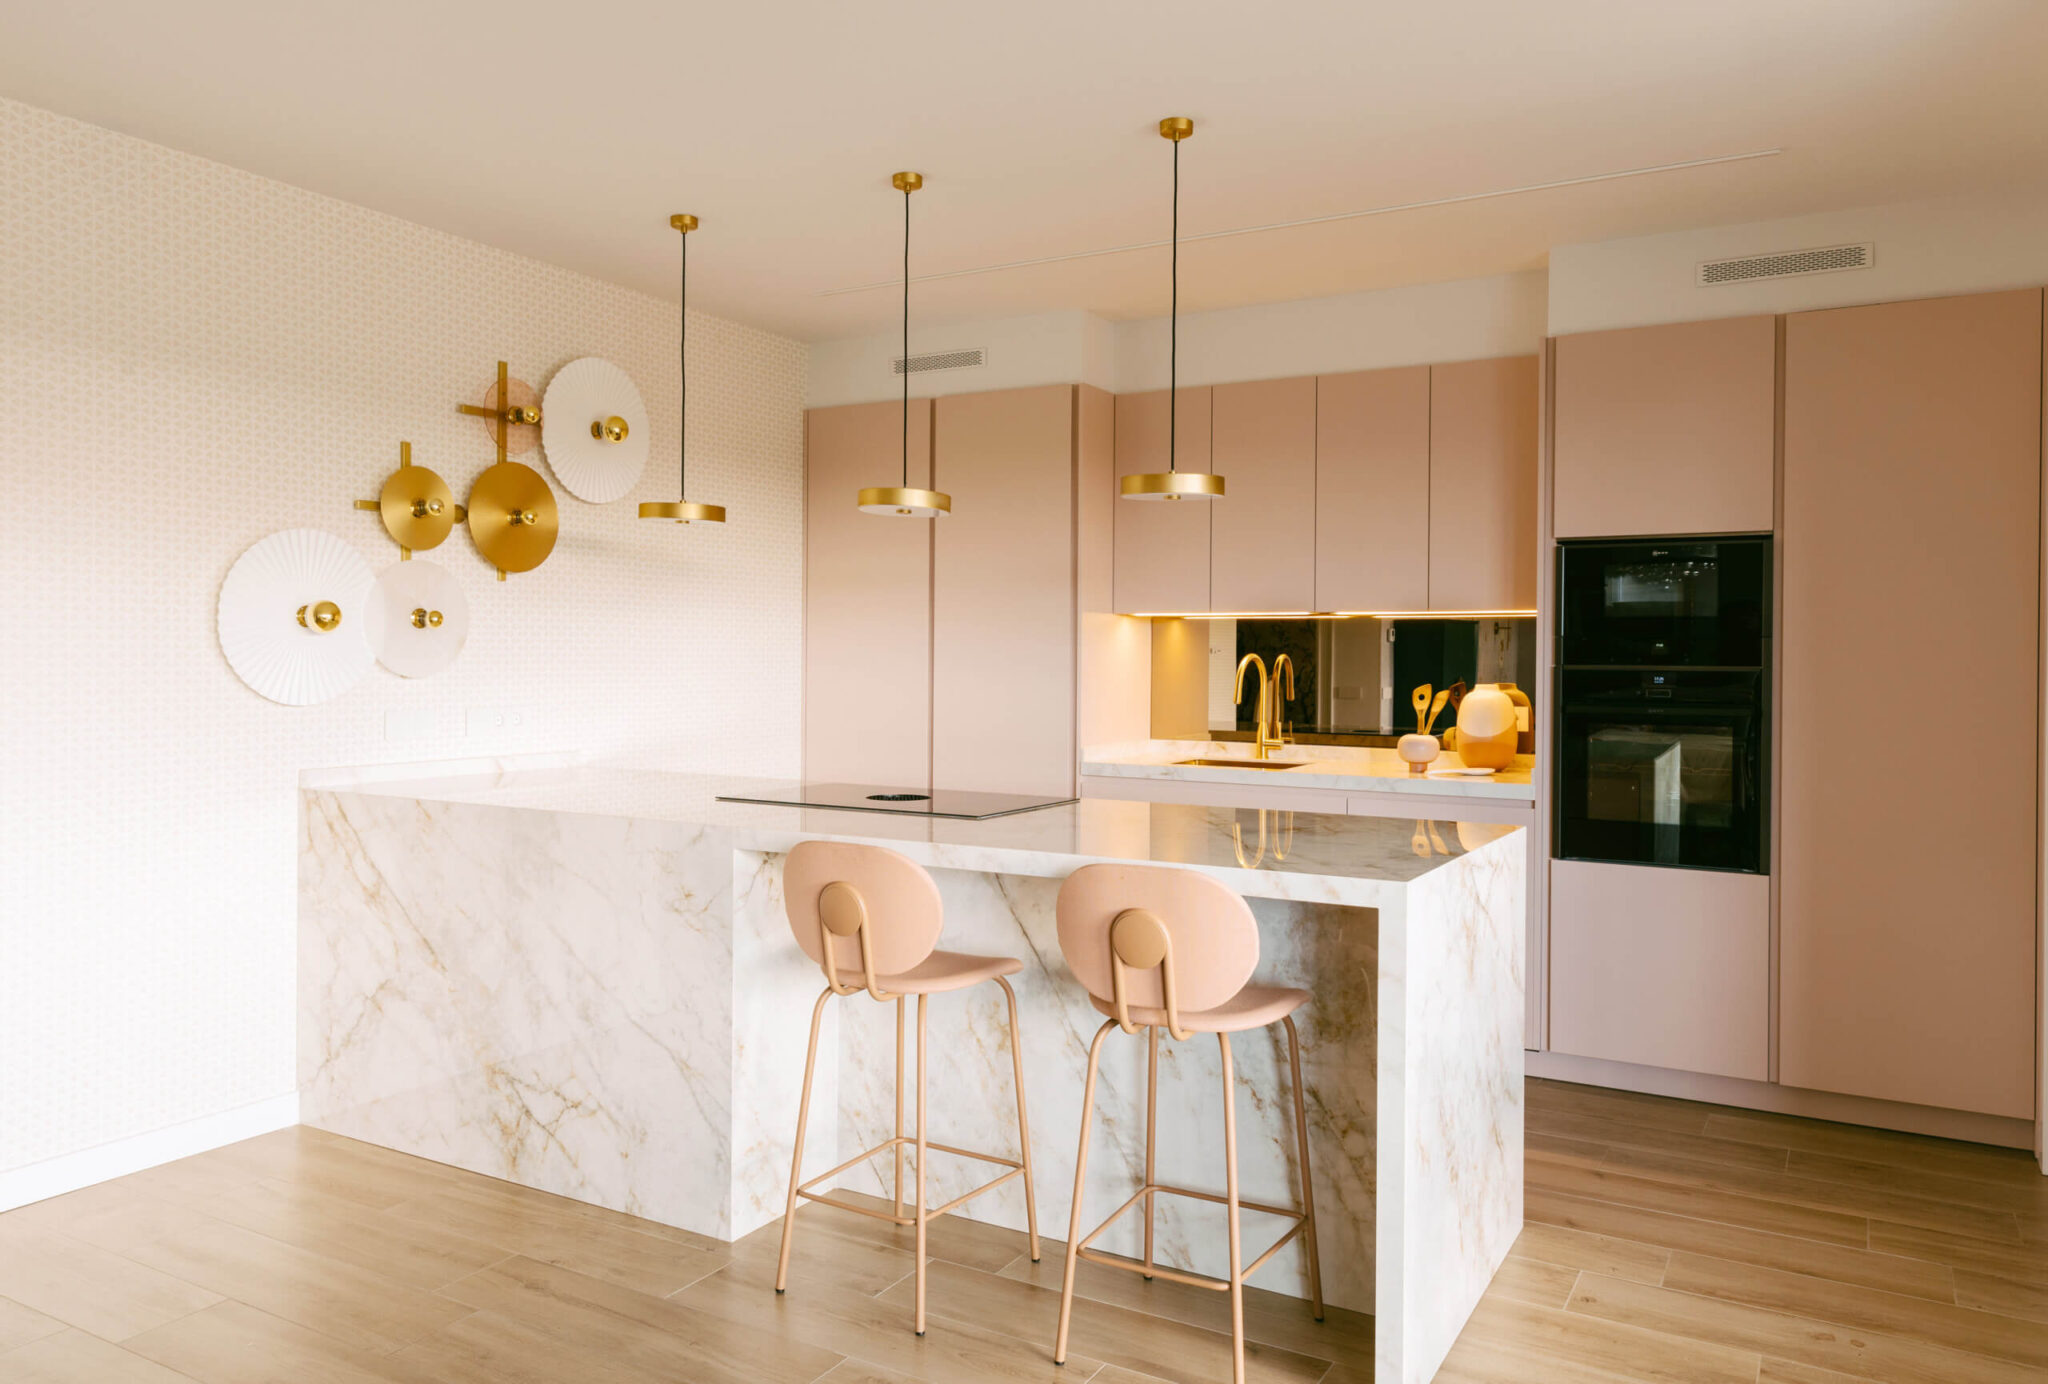 Cocina abierta decorada en tonos rosados y dorados por los interioristas y decoradores de Habitaka en Vitoria Gasteiz.